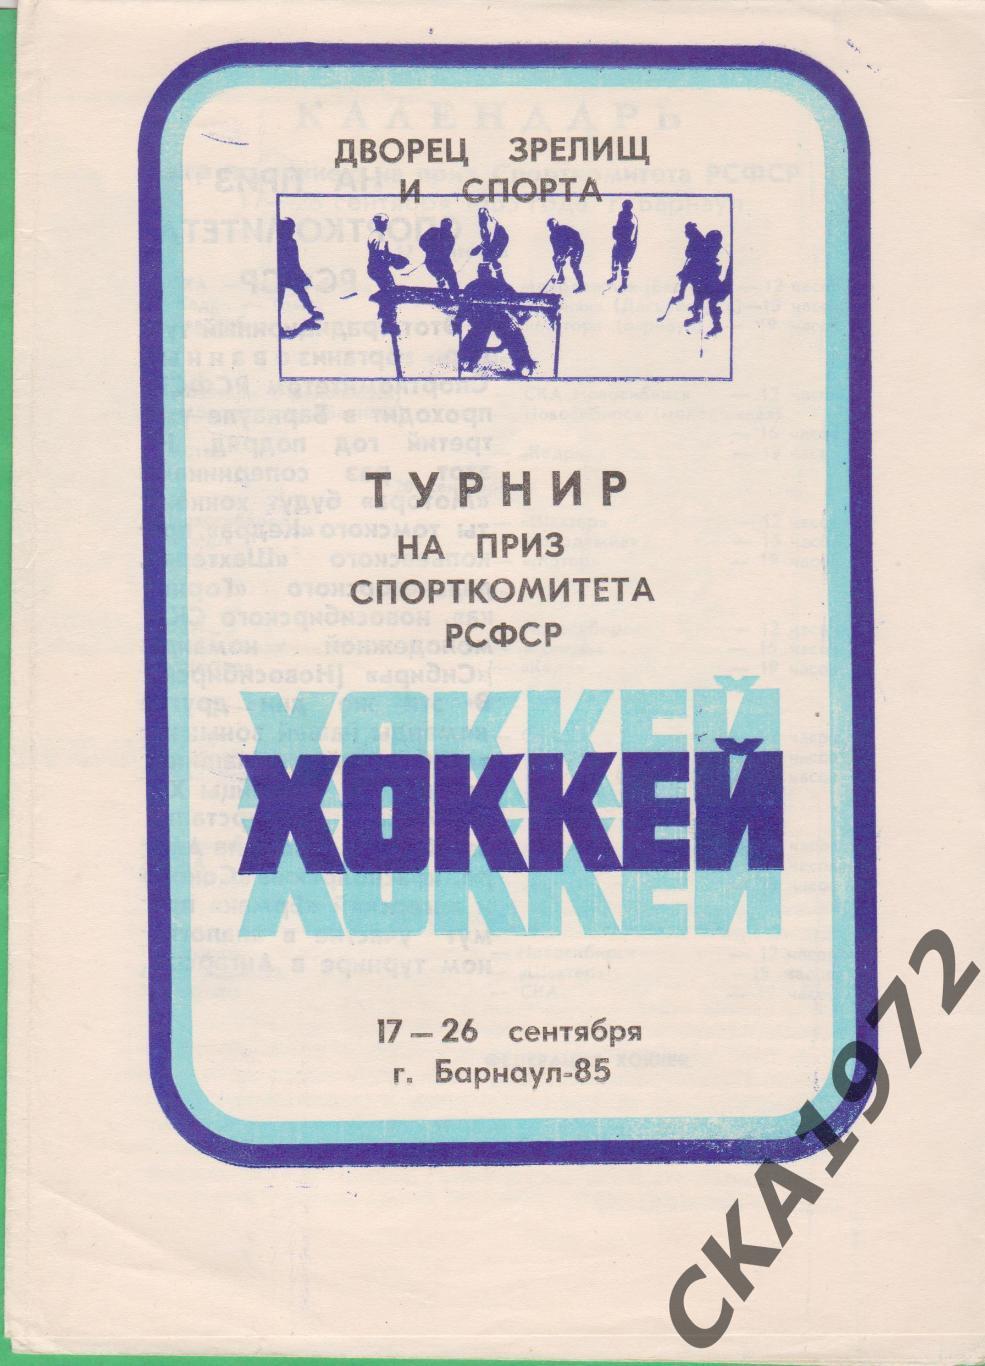 программа Турнир на приз Спорткомитета РСФСР Барнаул 17-26.09.1985 +++